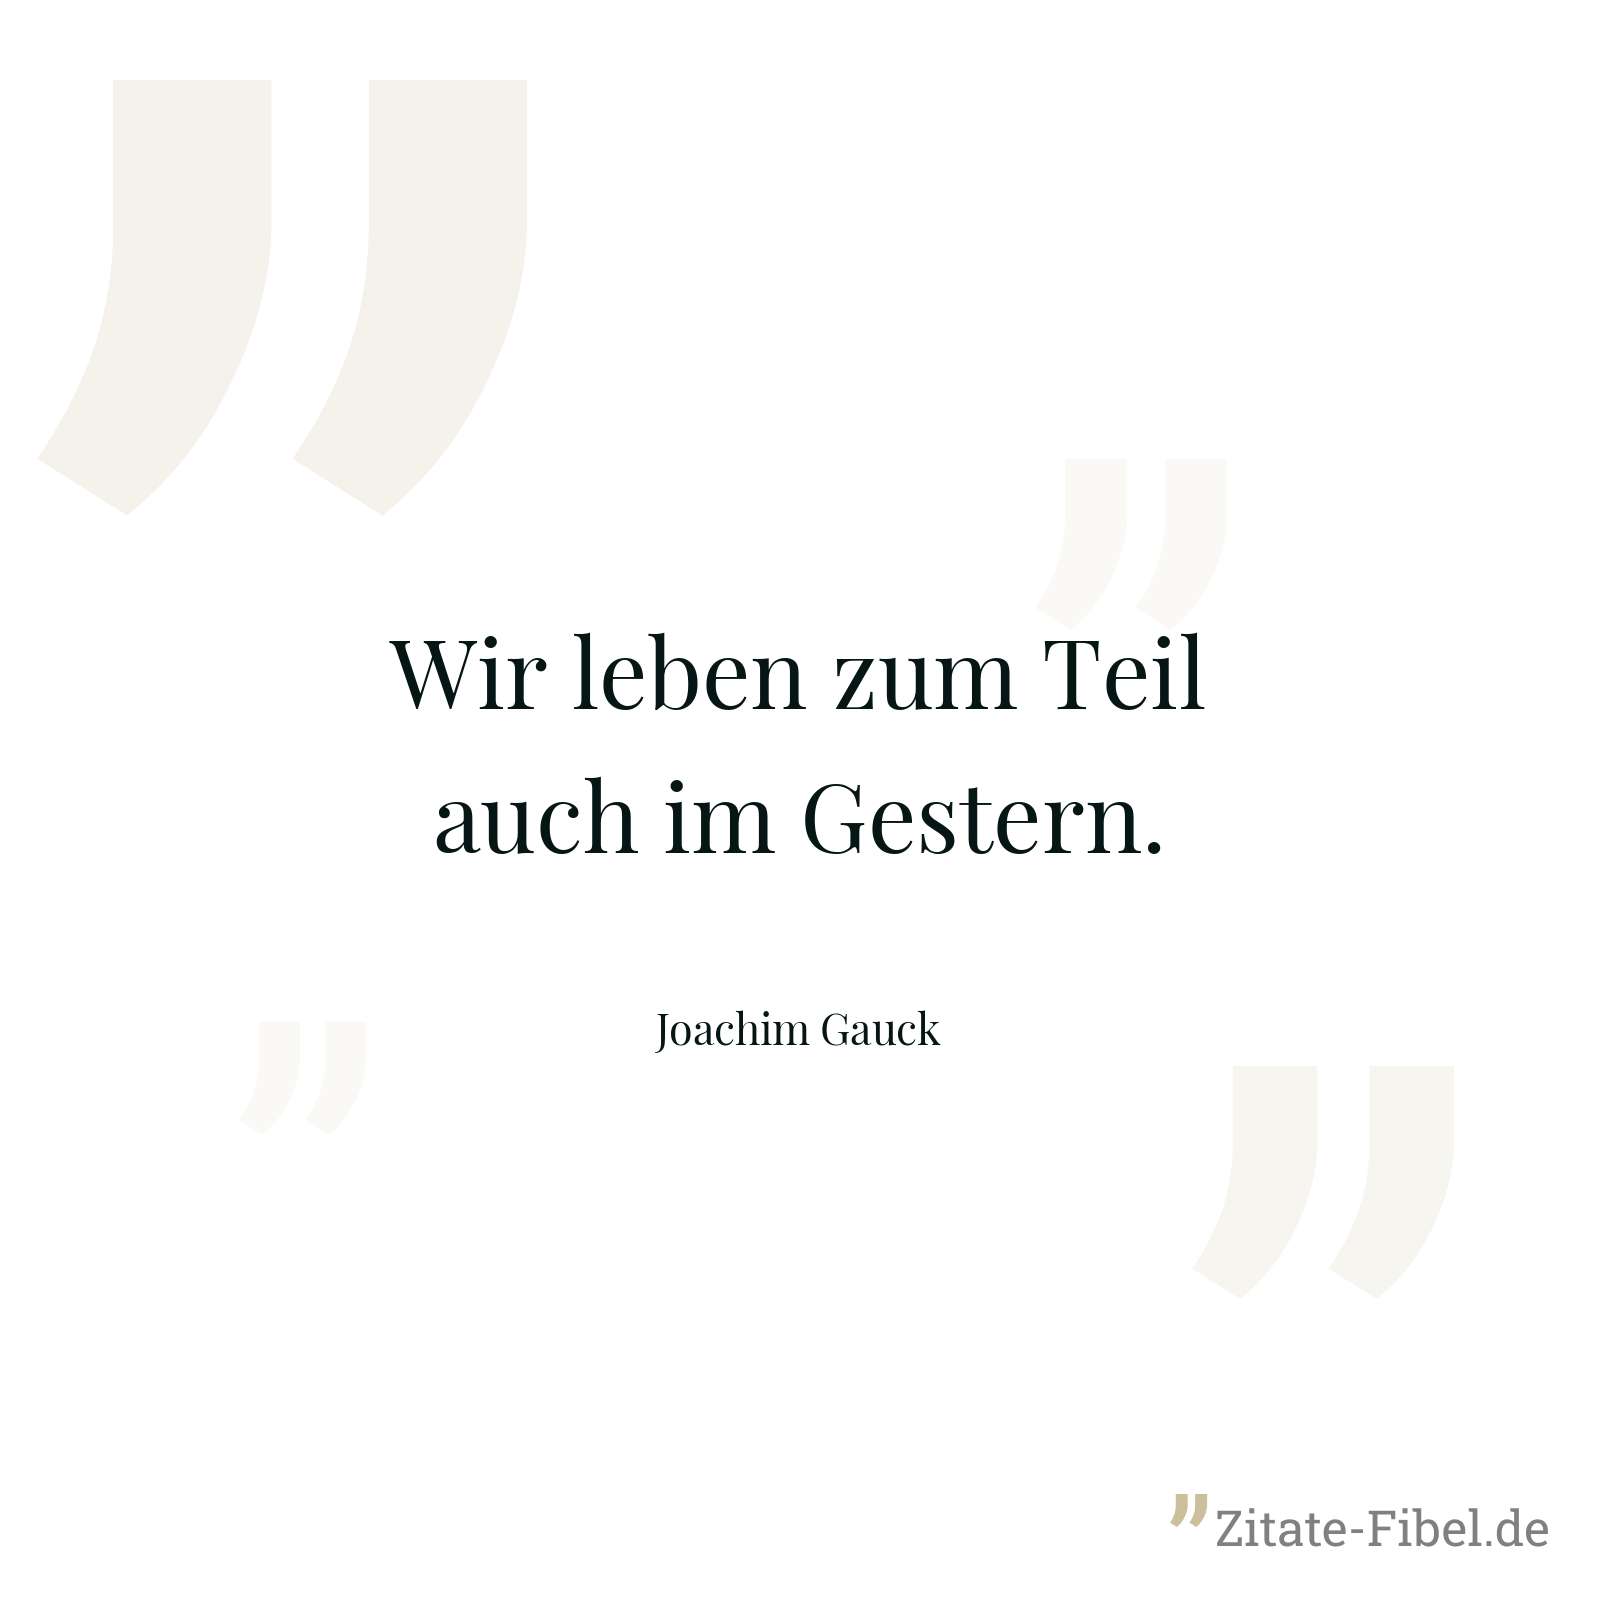 Wir leben zum Teil auch im Gestern. - Joachim Gauck